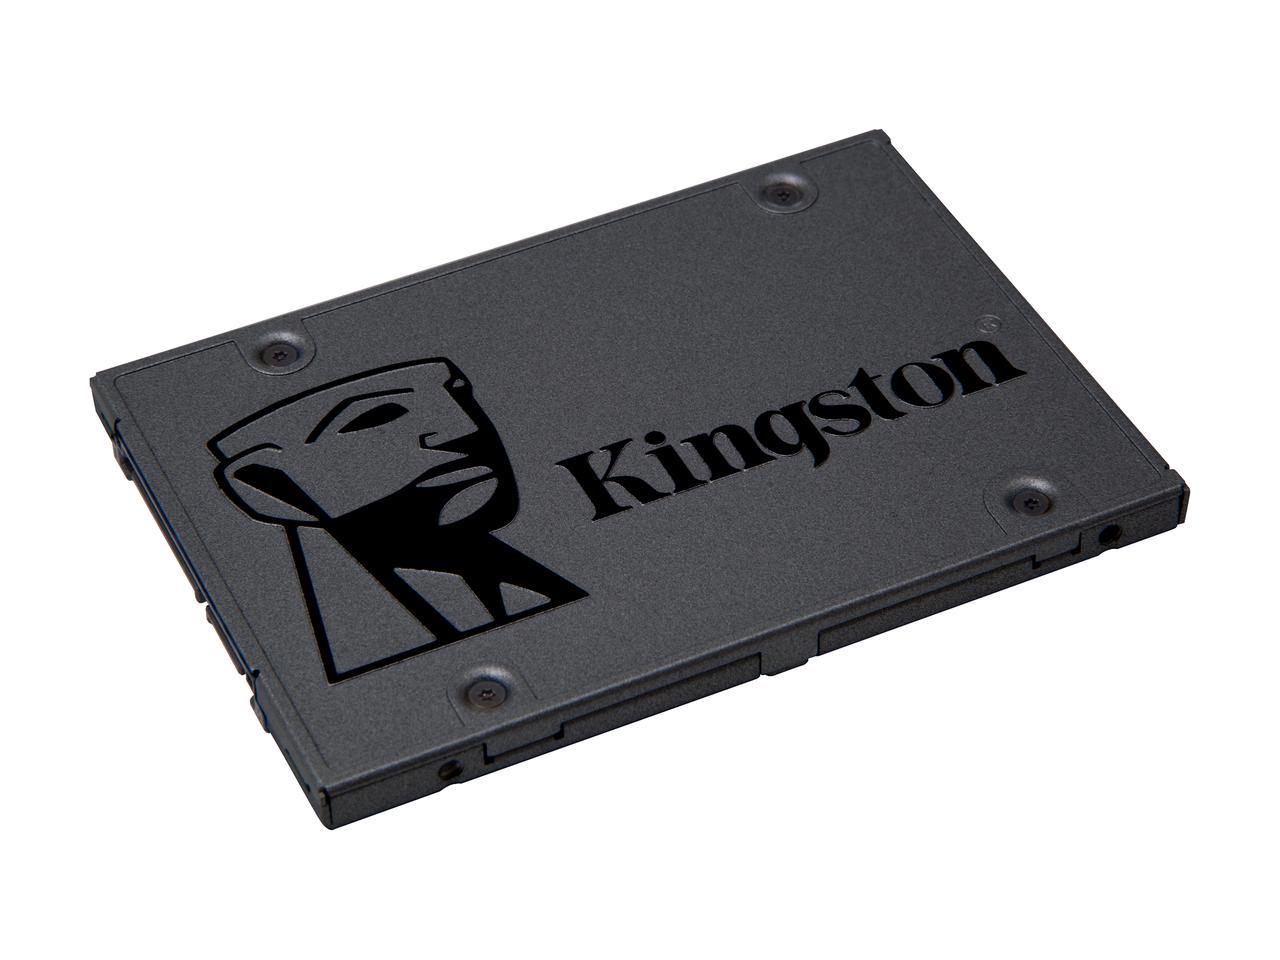 Ổ cứng SSD Kingston A400 240GB 2.5 inch - Chính Hãng